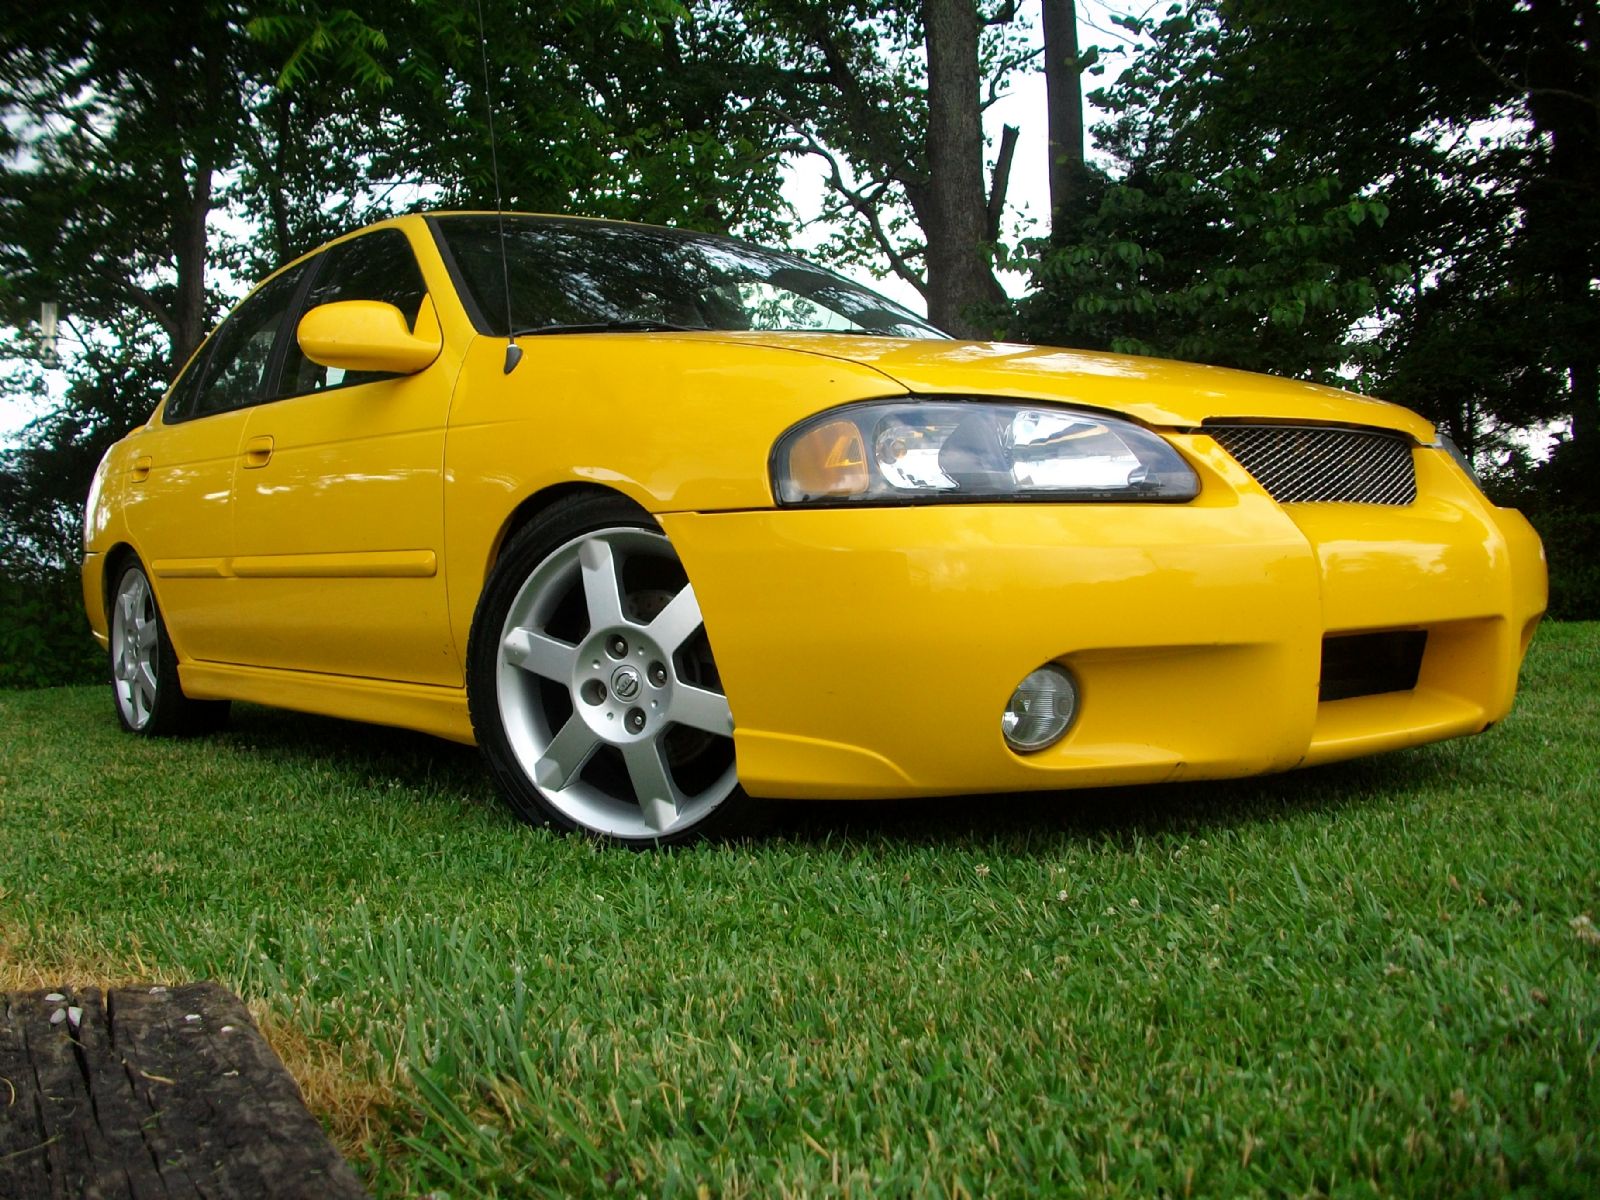 2003 Nissan sentra se-r spec v turbo #1